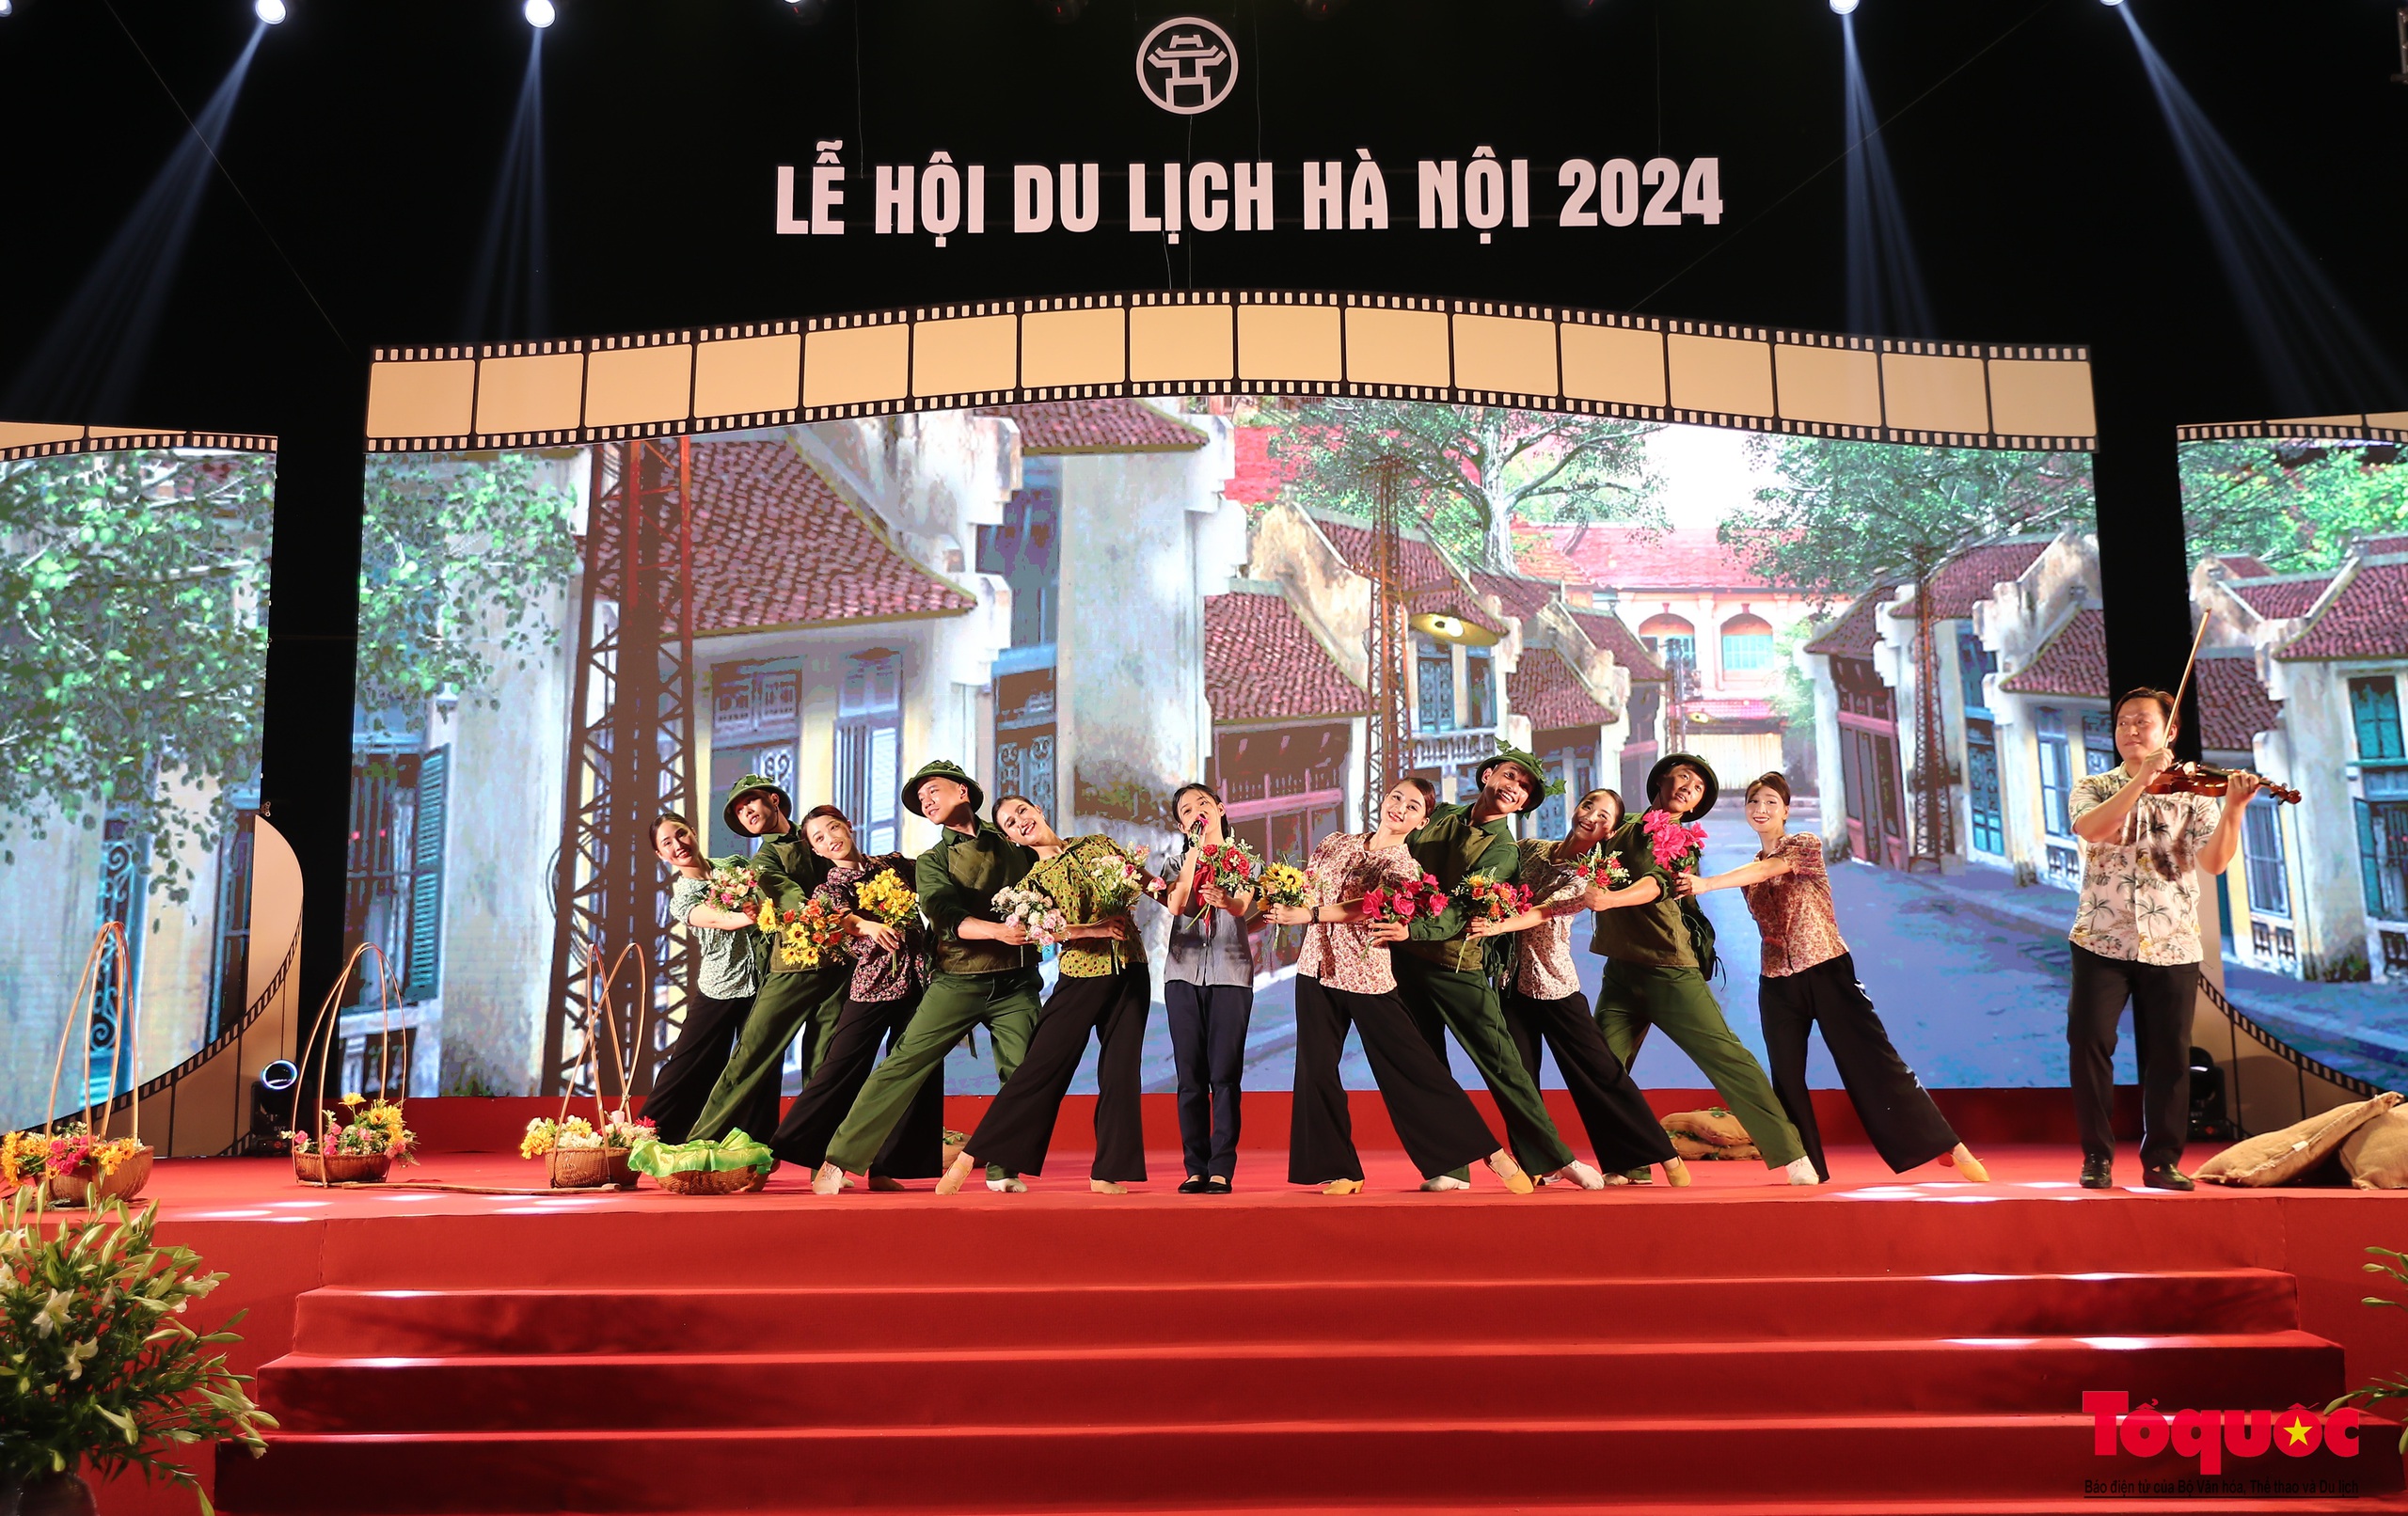 Khai mạc Lễ hội du lịch Hà Nội 2024 - Ảnh 16.